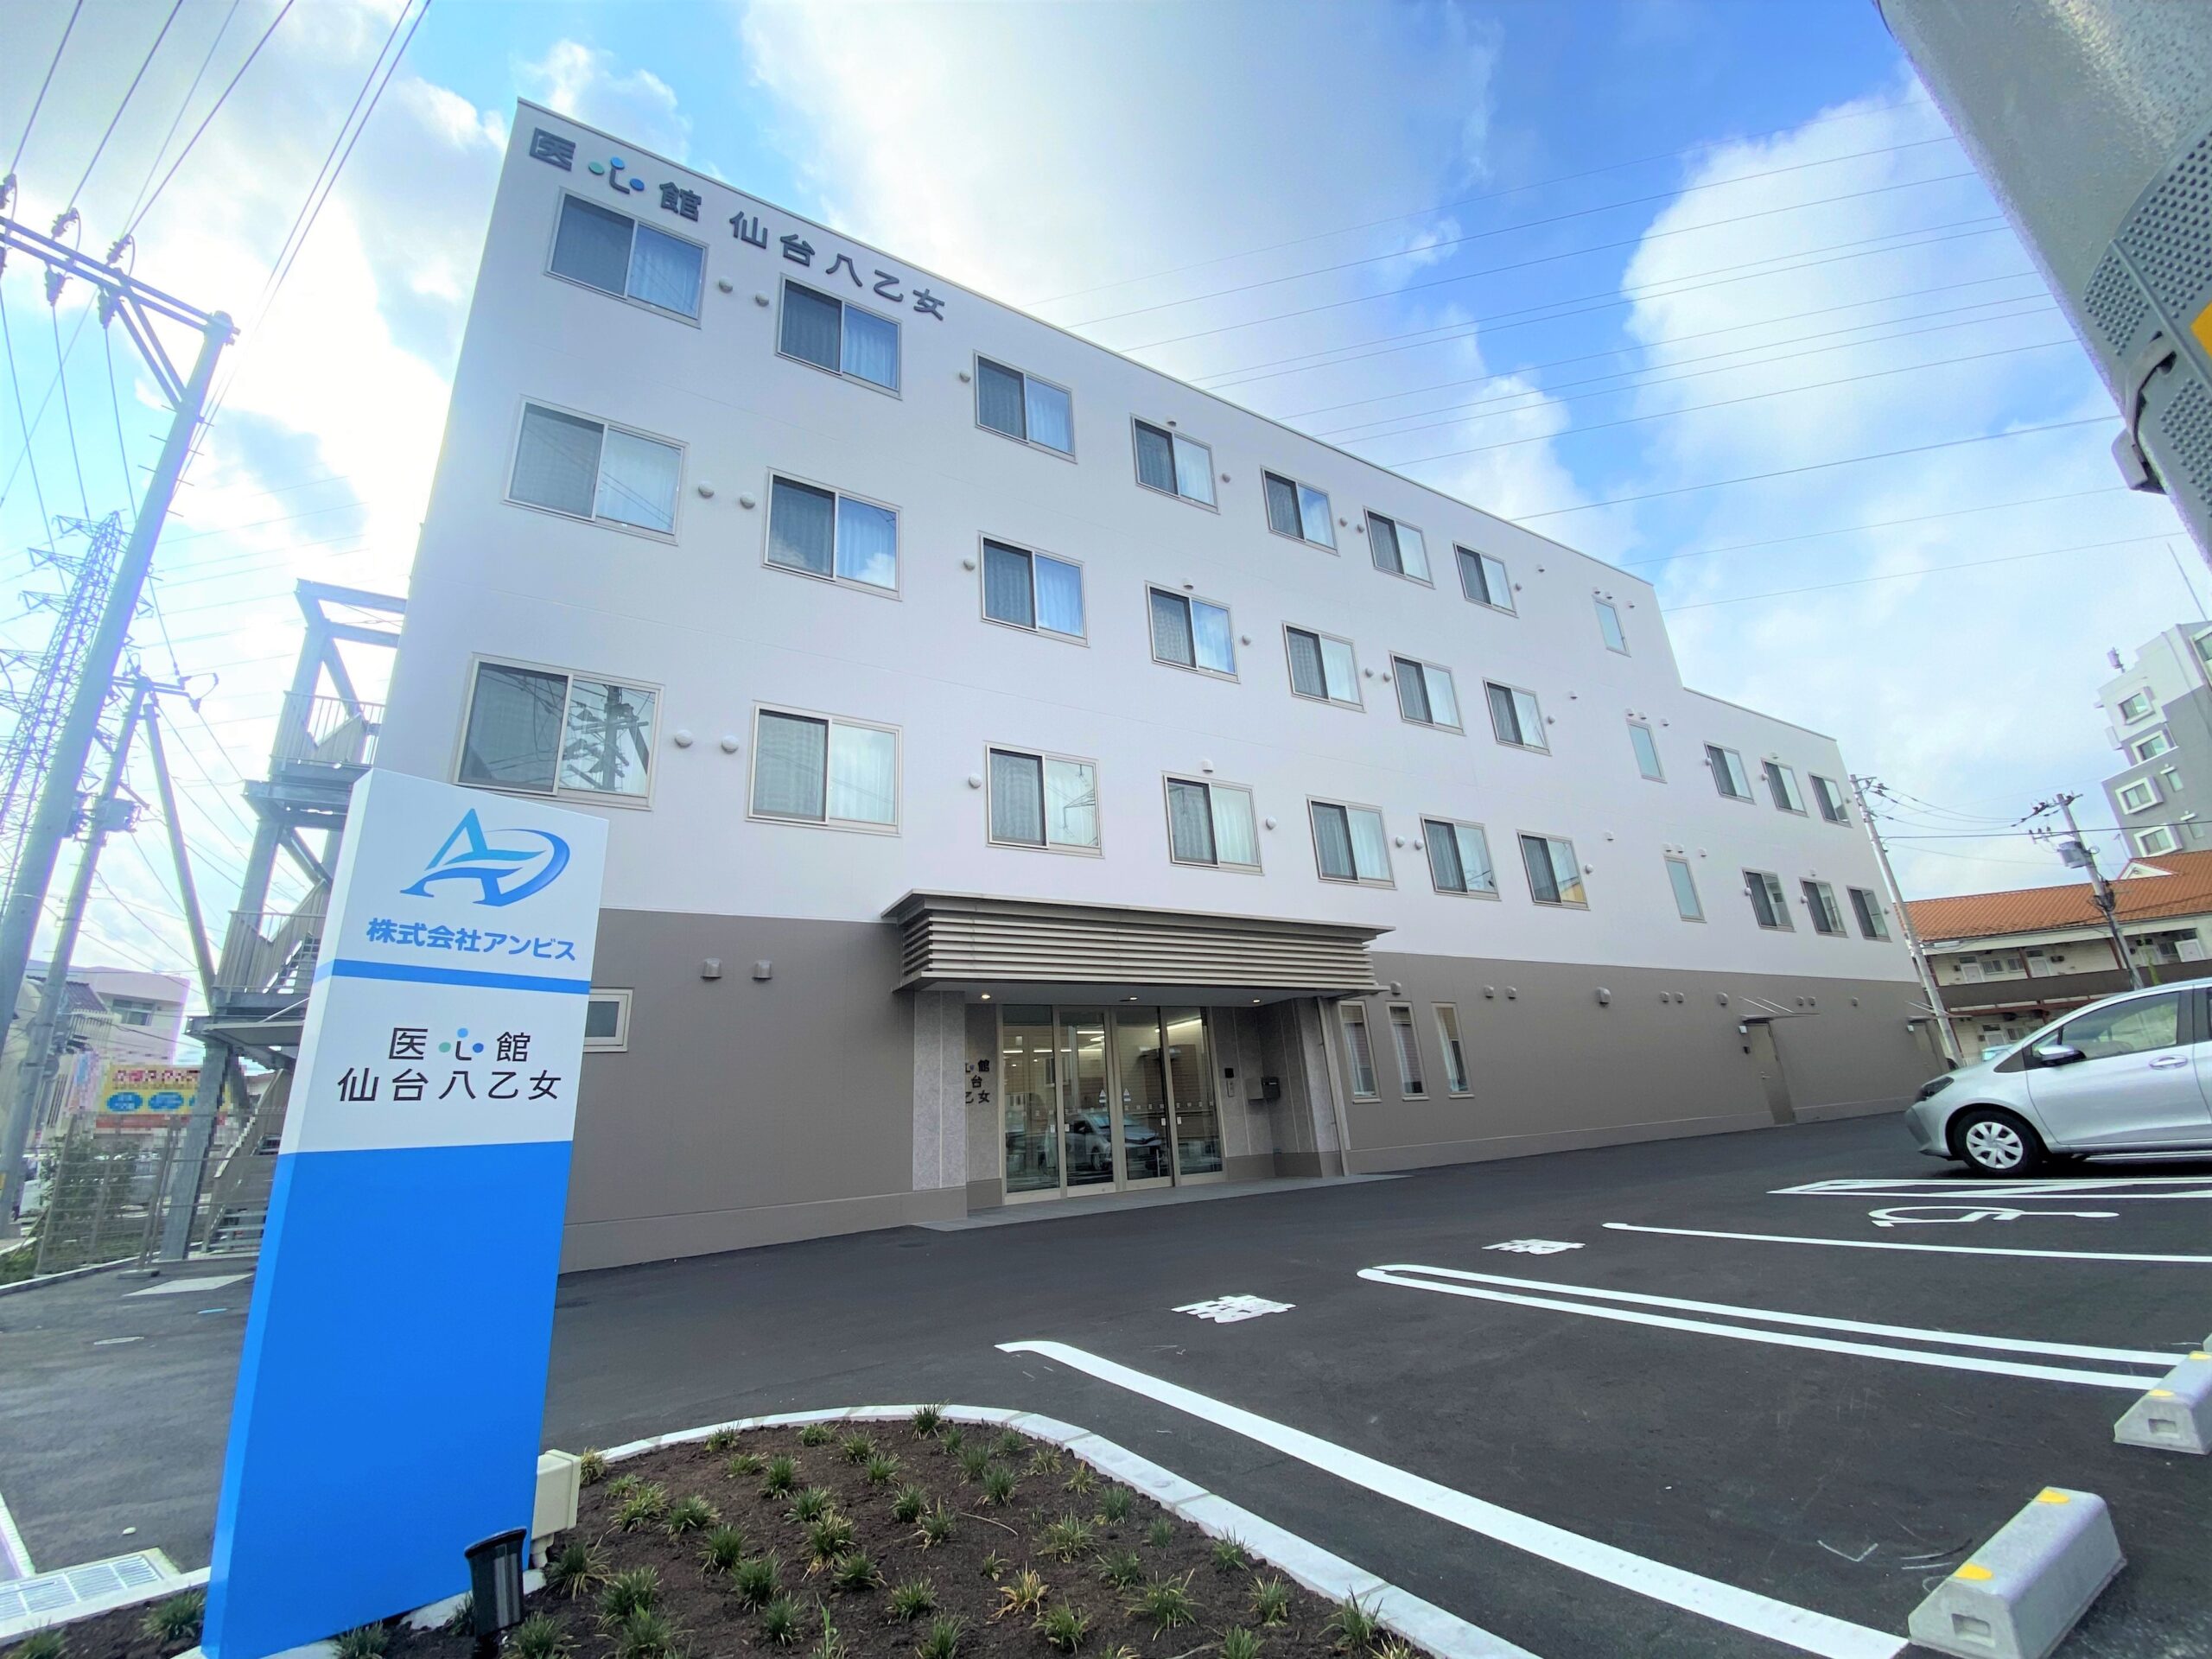 宮城県では２施設目となる 有料老人ホーム「医心館 仙台八乙女」をオープンしました